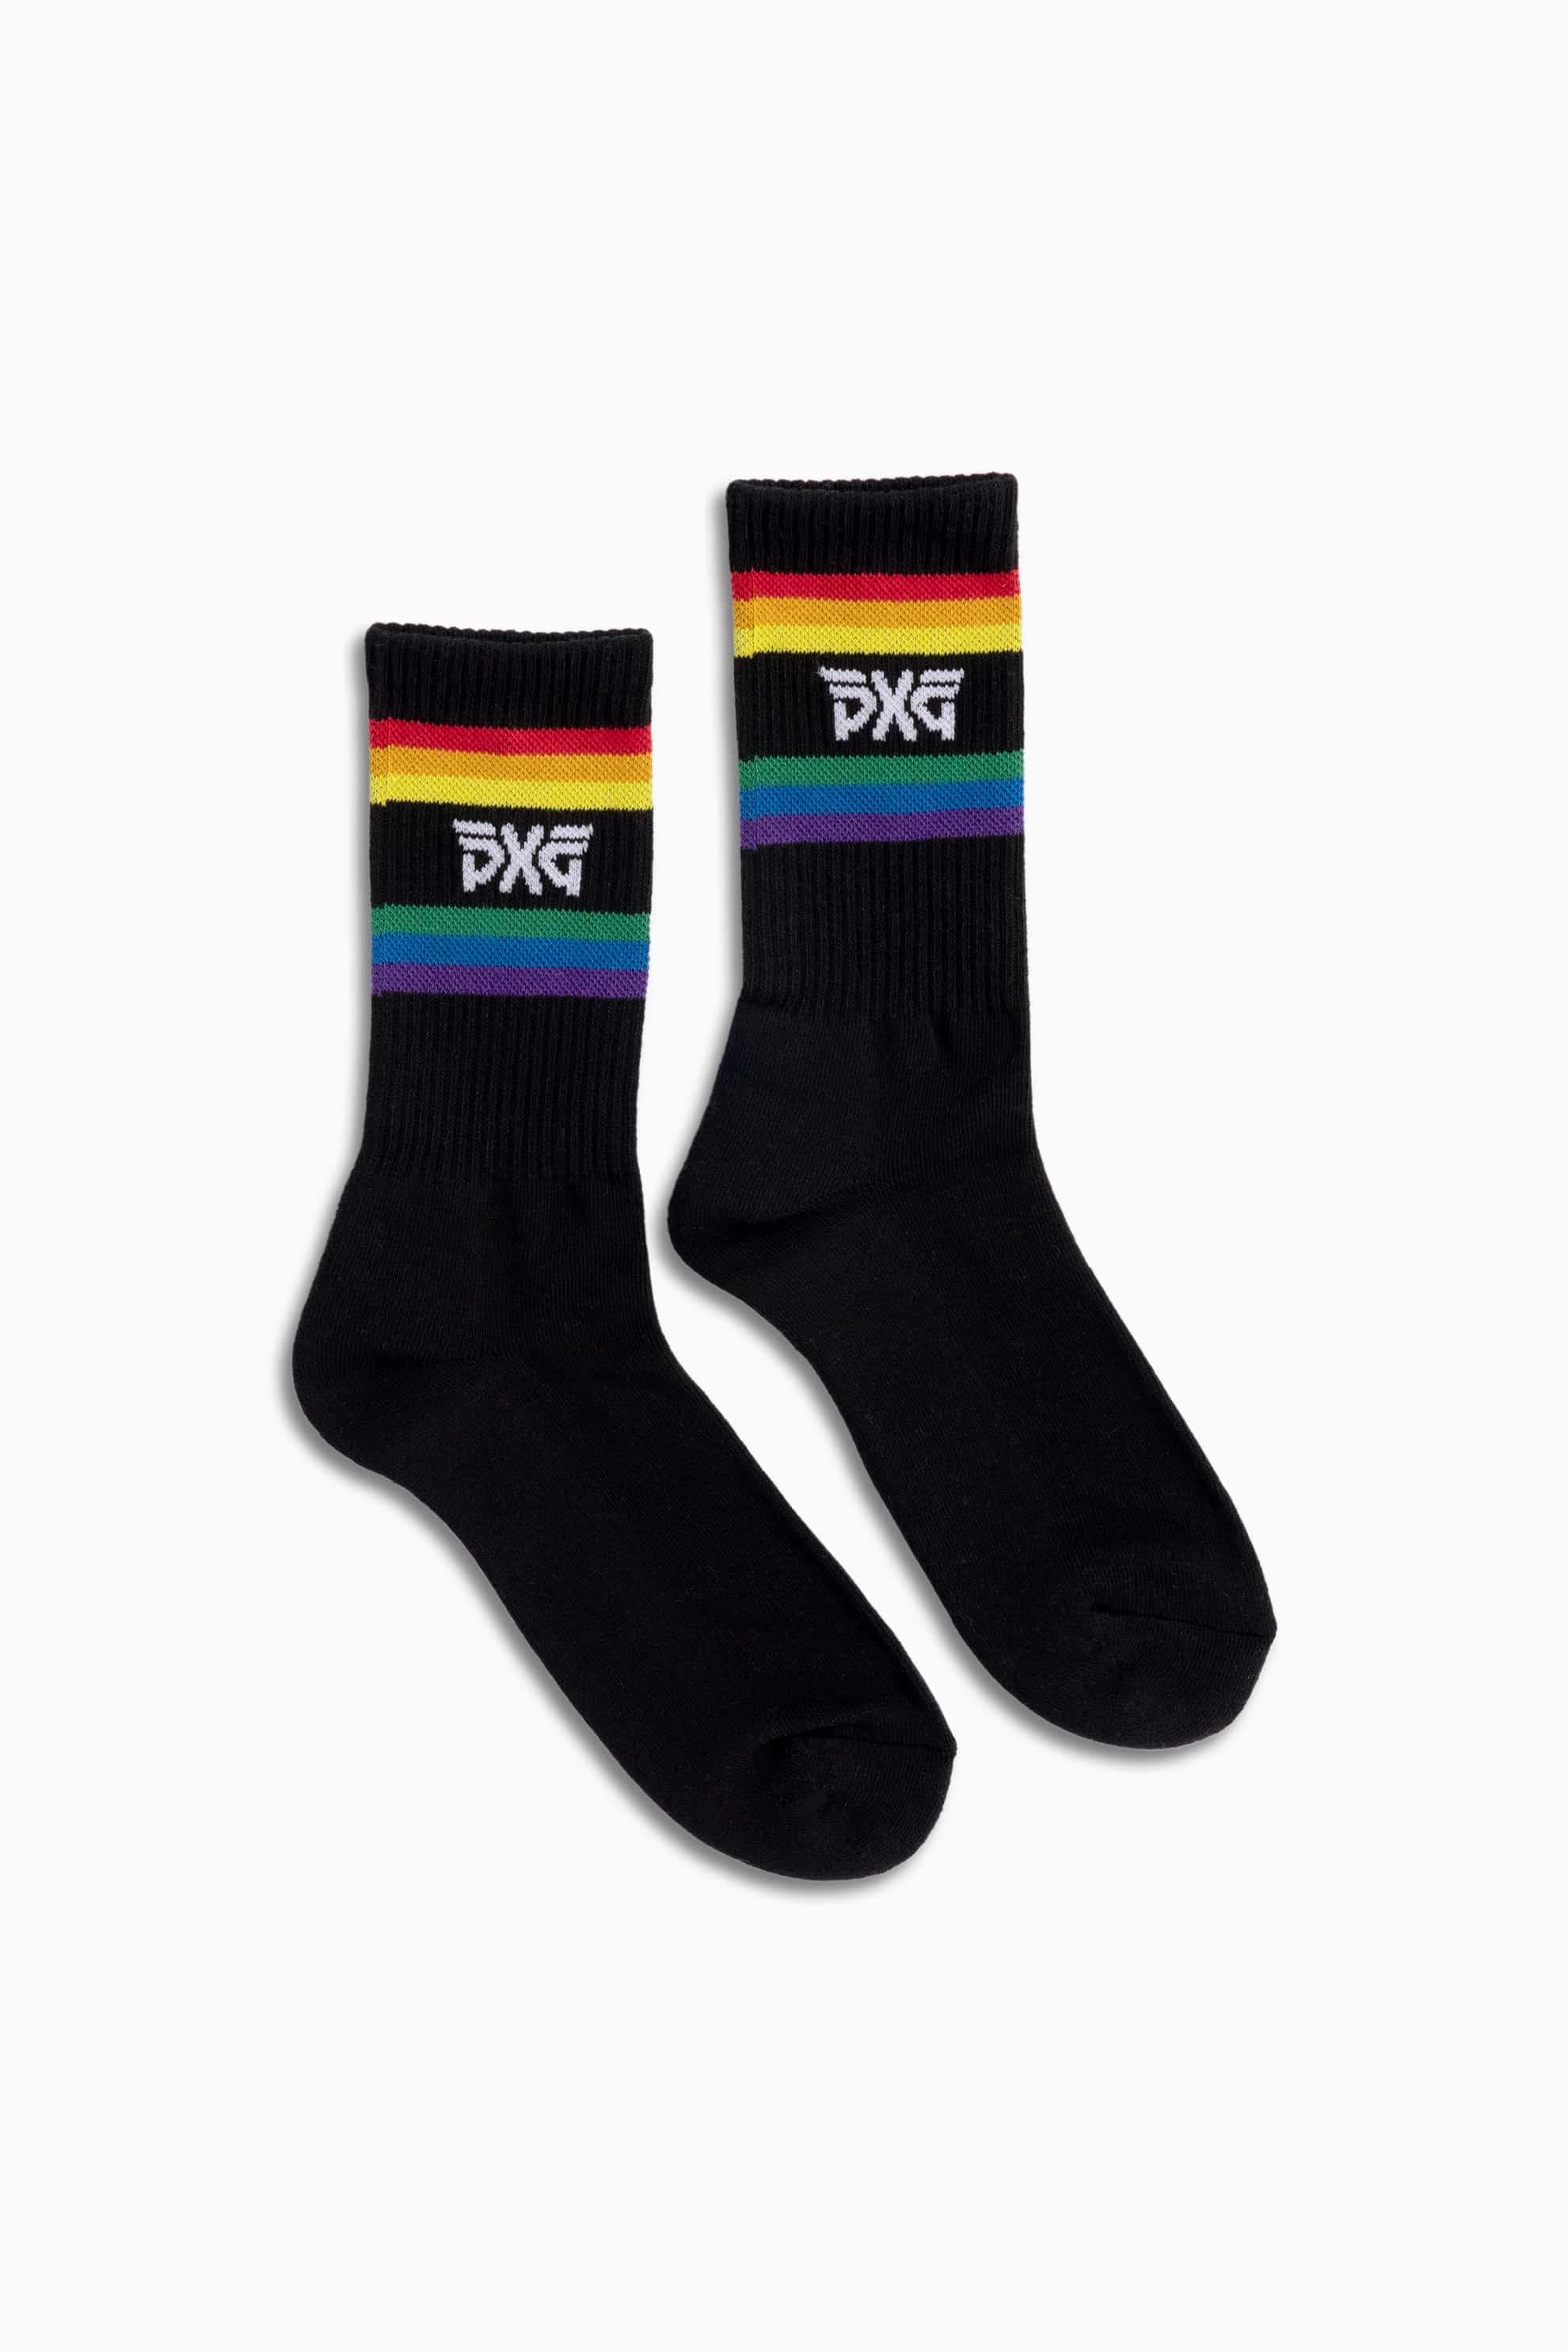 Pride | Socks PXG Buy Crew Men\'s